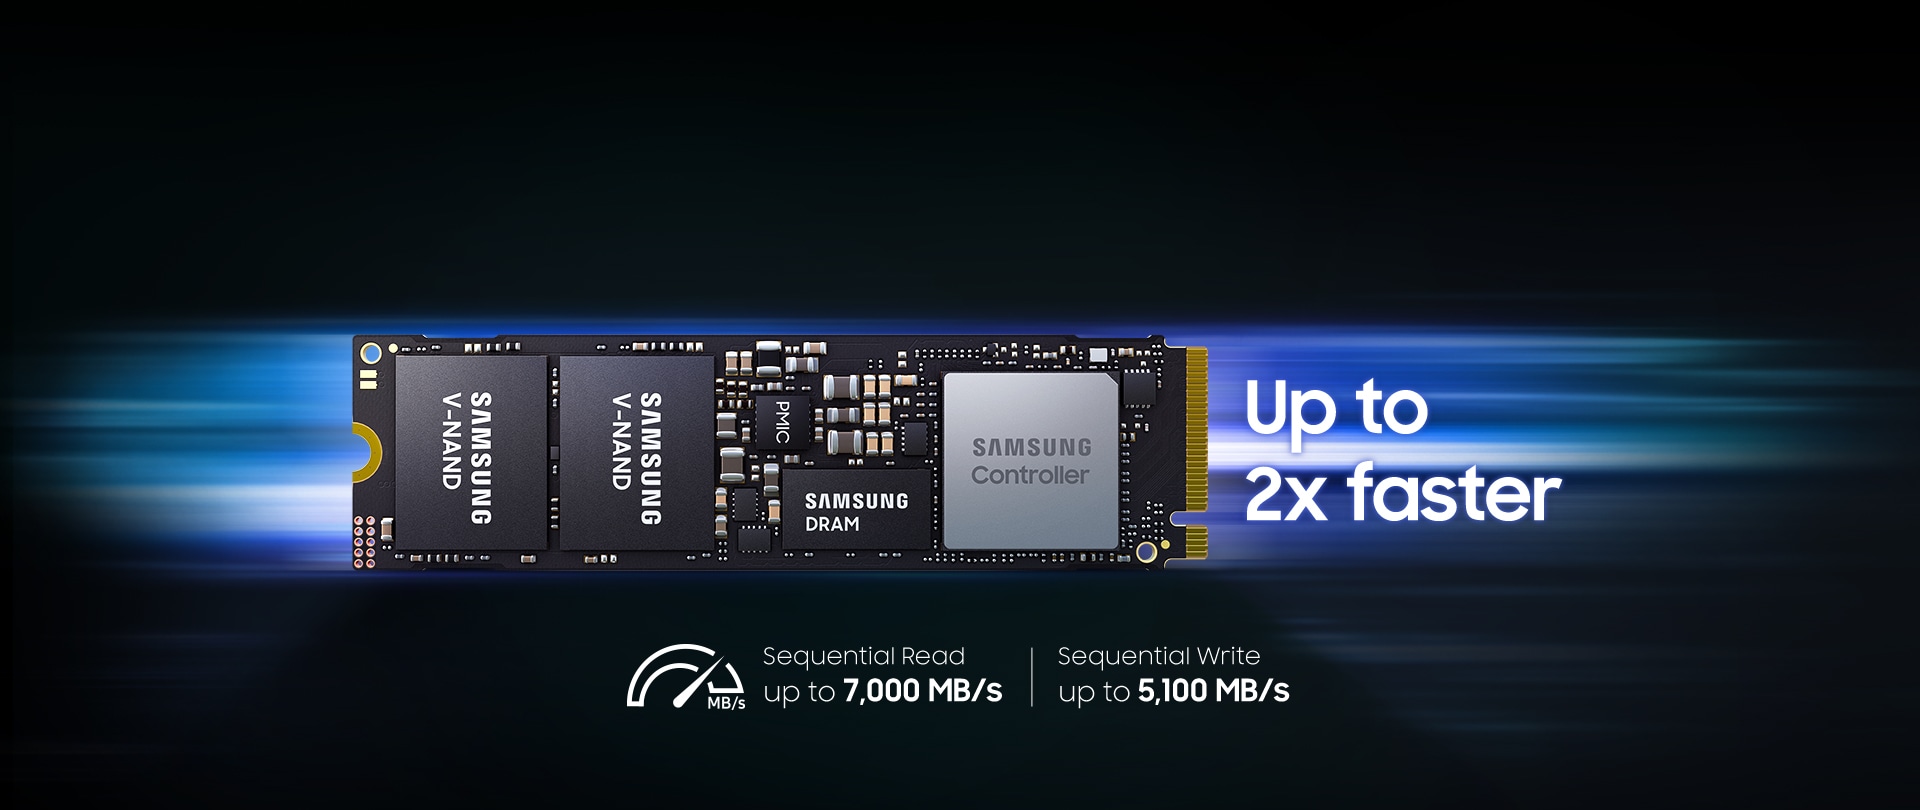 NAND メモリ、Samsung DRAM、コントローラー チップなどのコンポーネントを備えた Samsung の高速 SSD。